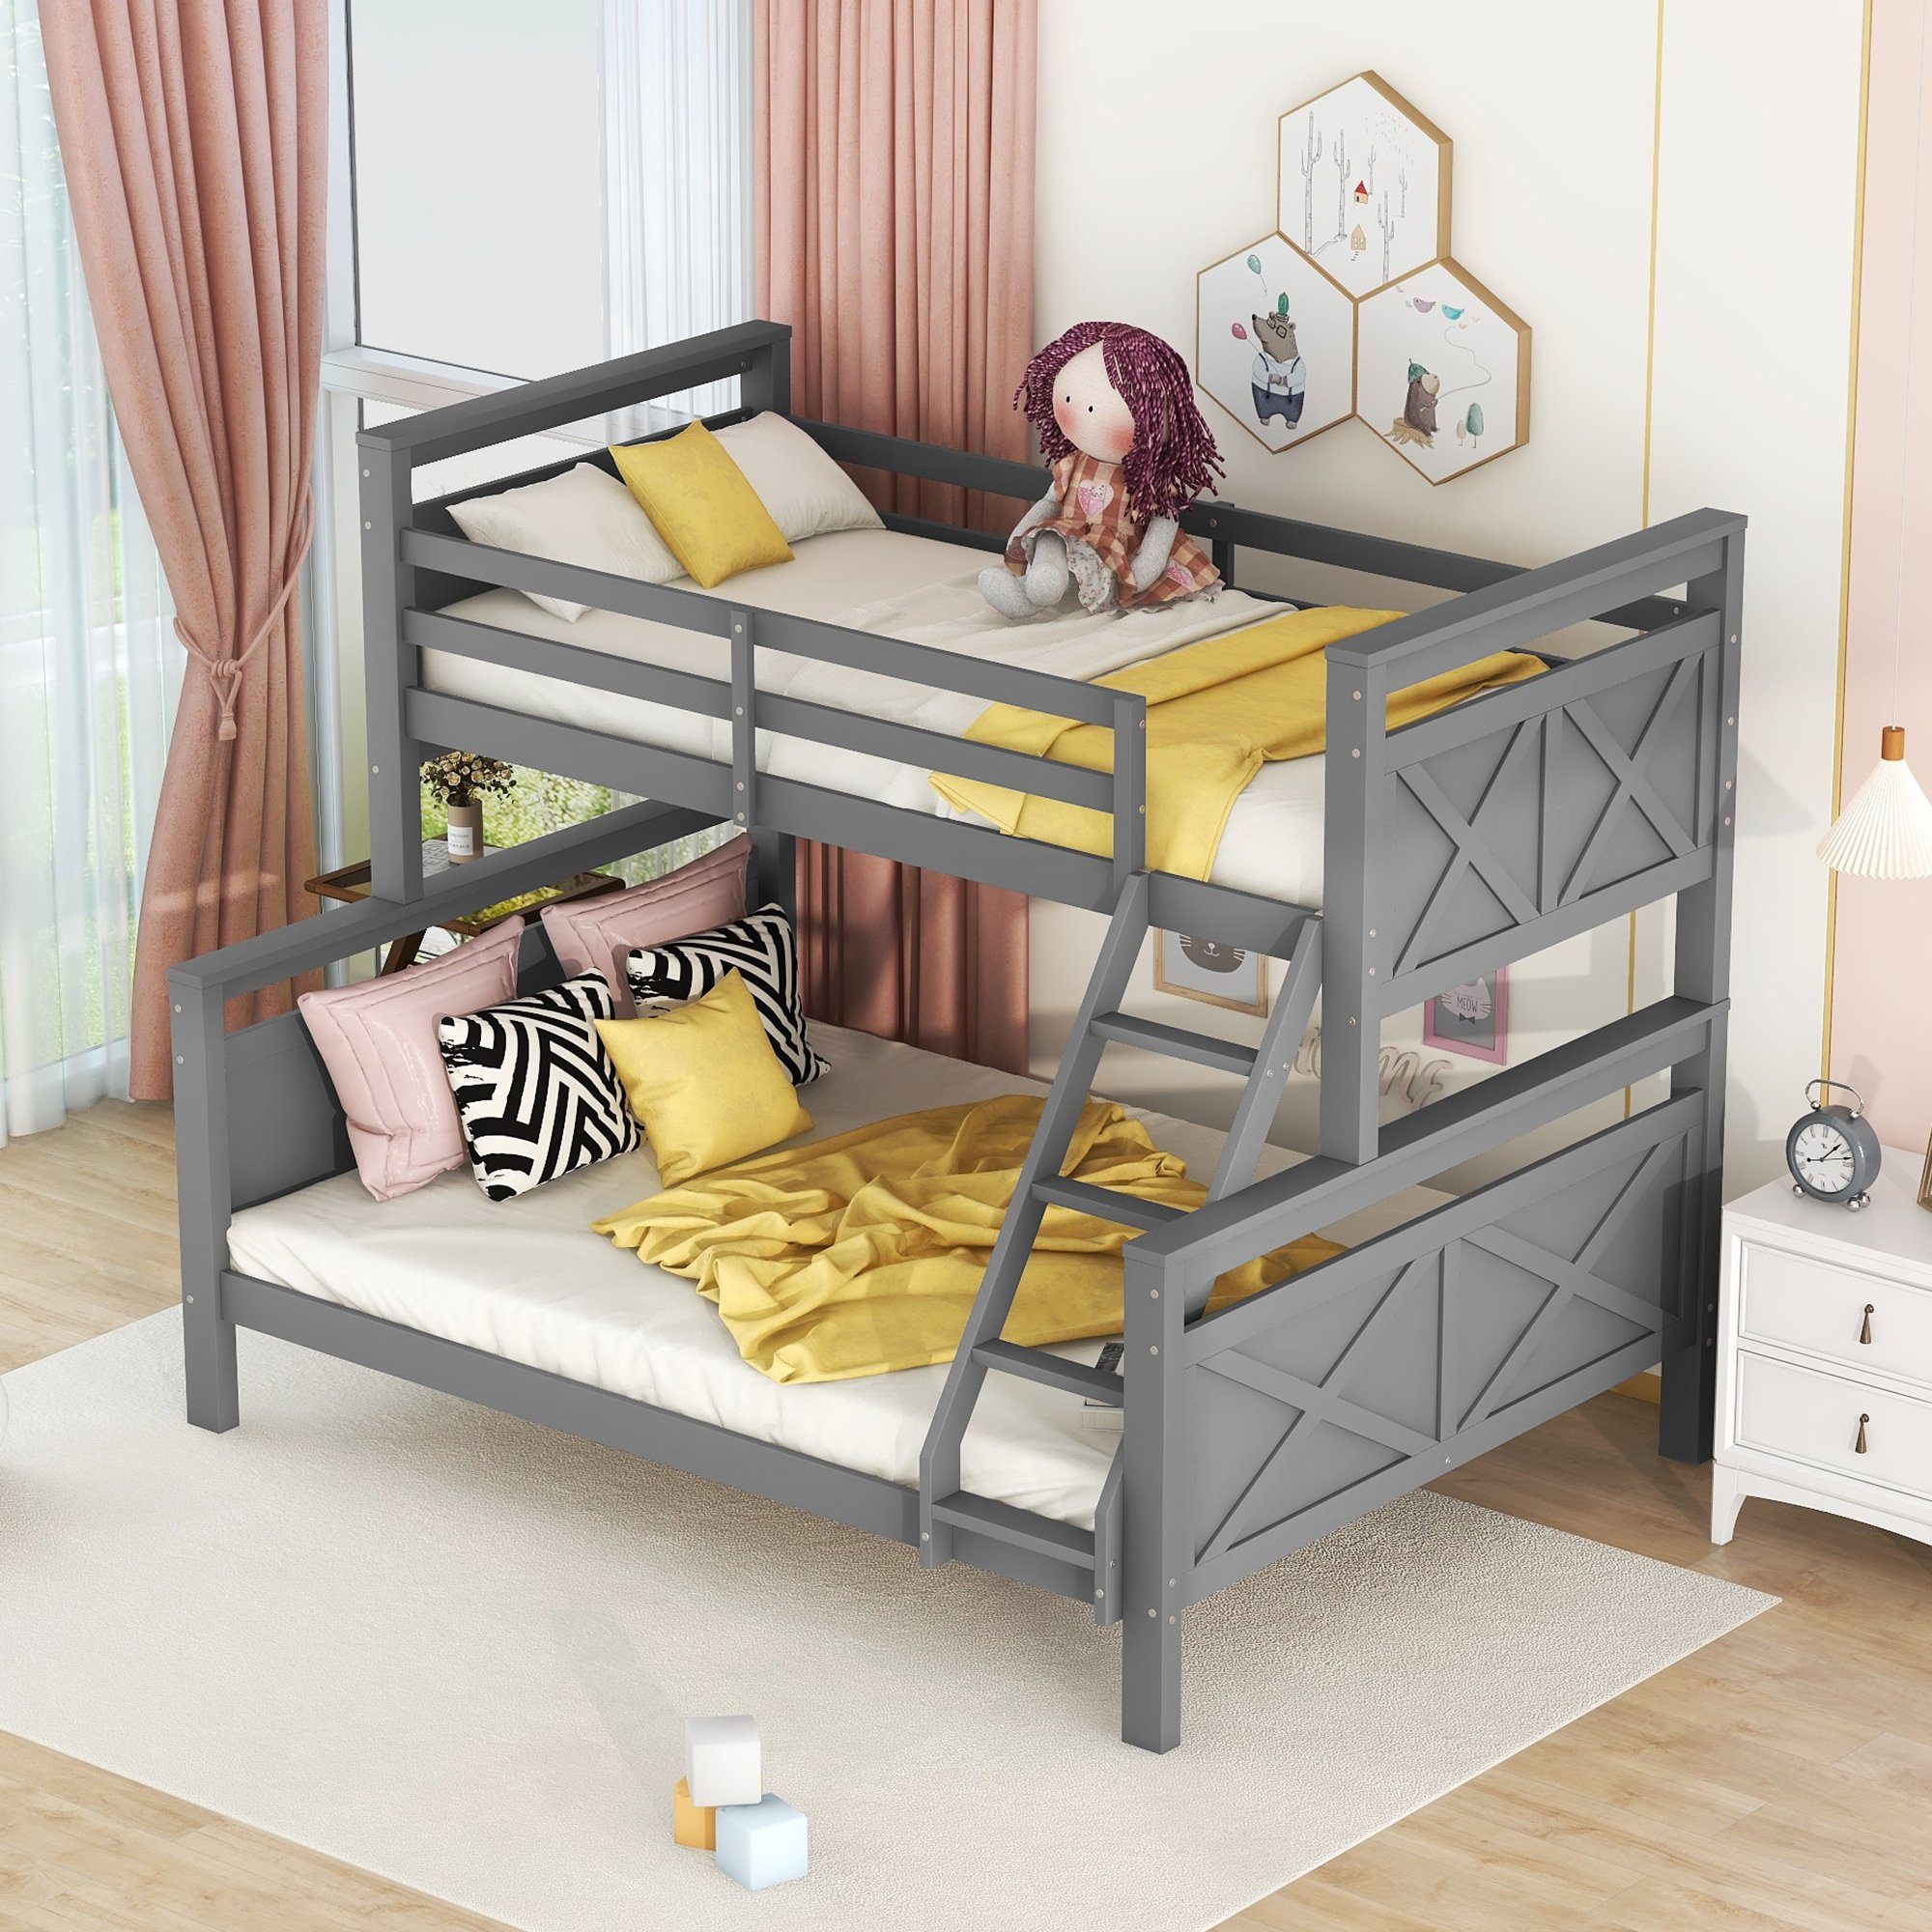 OKWISH Bett Etagenbett, Holzbett für Kinder 90(140)x200cm (mit Leiter und Sicherheitsgeländer, umbaubar in 2 getrennte Betten), Ohne Matratze Grau